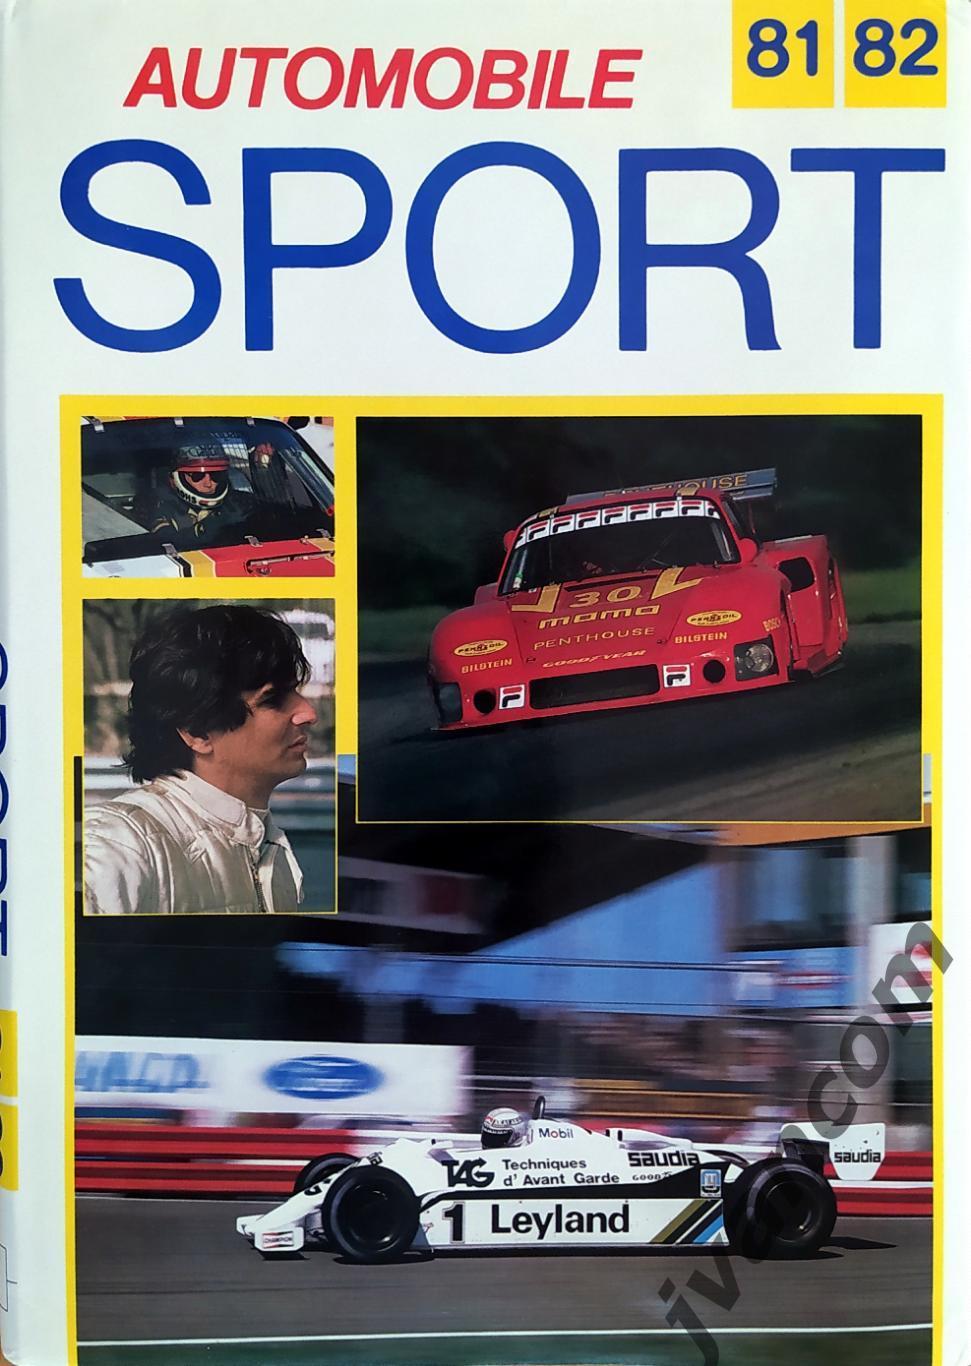 Автоспорт. Automobile SPORT / Автомобильный Спорт 81-82. Итоги сезона 1981 года.